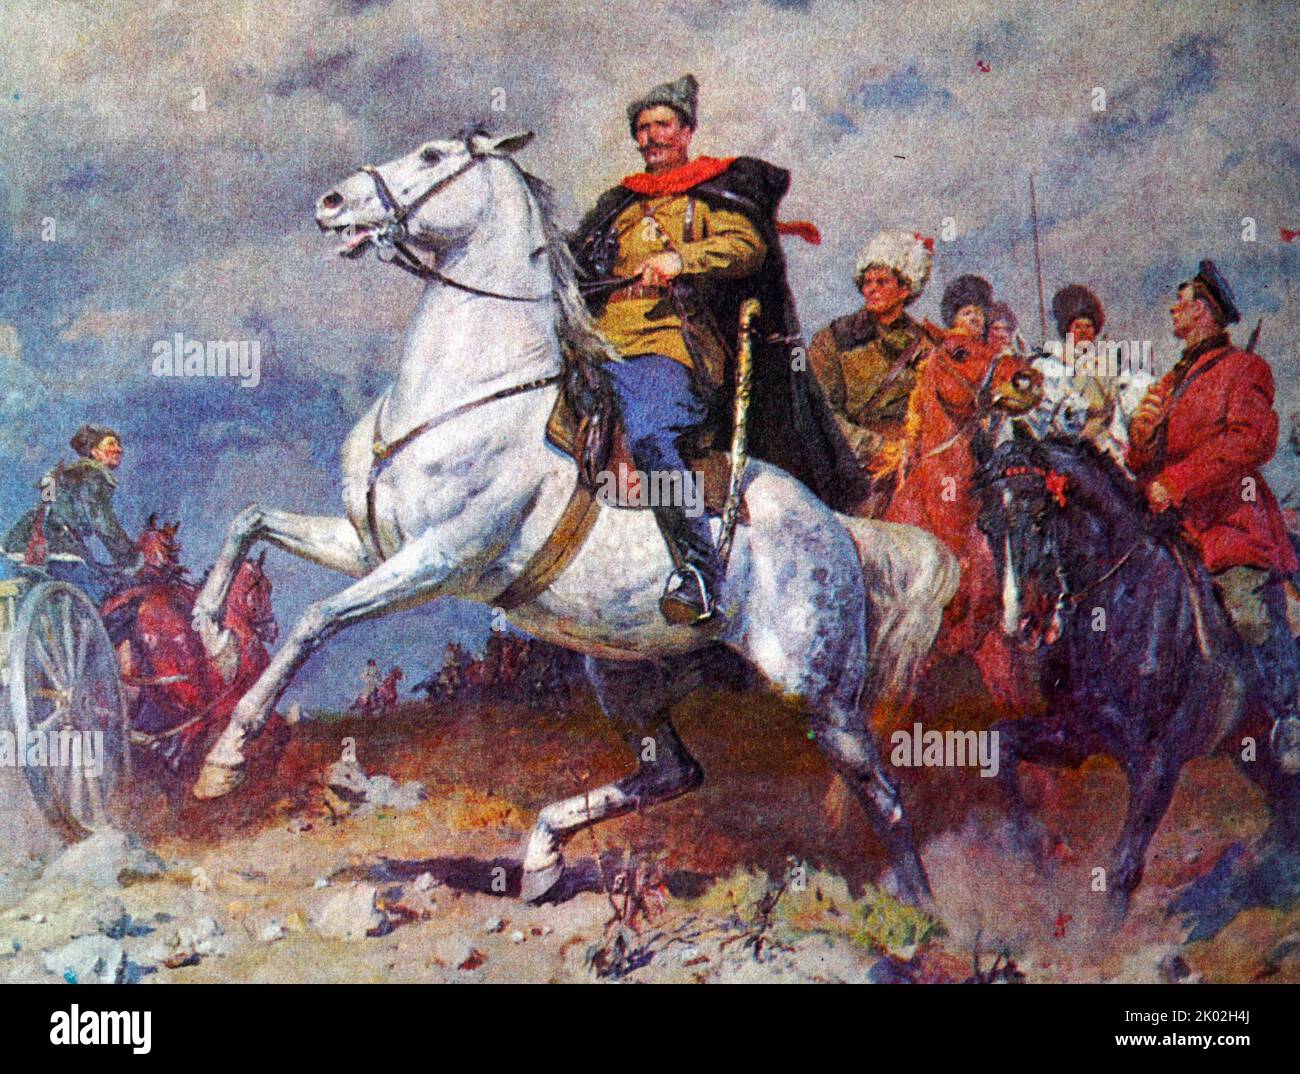 Porträt des Bürgerkriegshelden W. I. Chapaev. (Gemälde von K.D. Kitayka). Wassili Iwanowitsch Tschapajew oder Tschapajew (1887 - 1919) war ein gefeierter russischer Soldat und Kommandeur der Roten Armee während des russischen Bürgerkrieges. Stockfoto